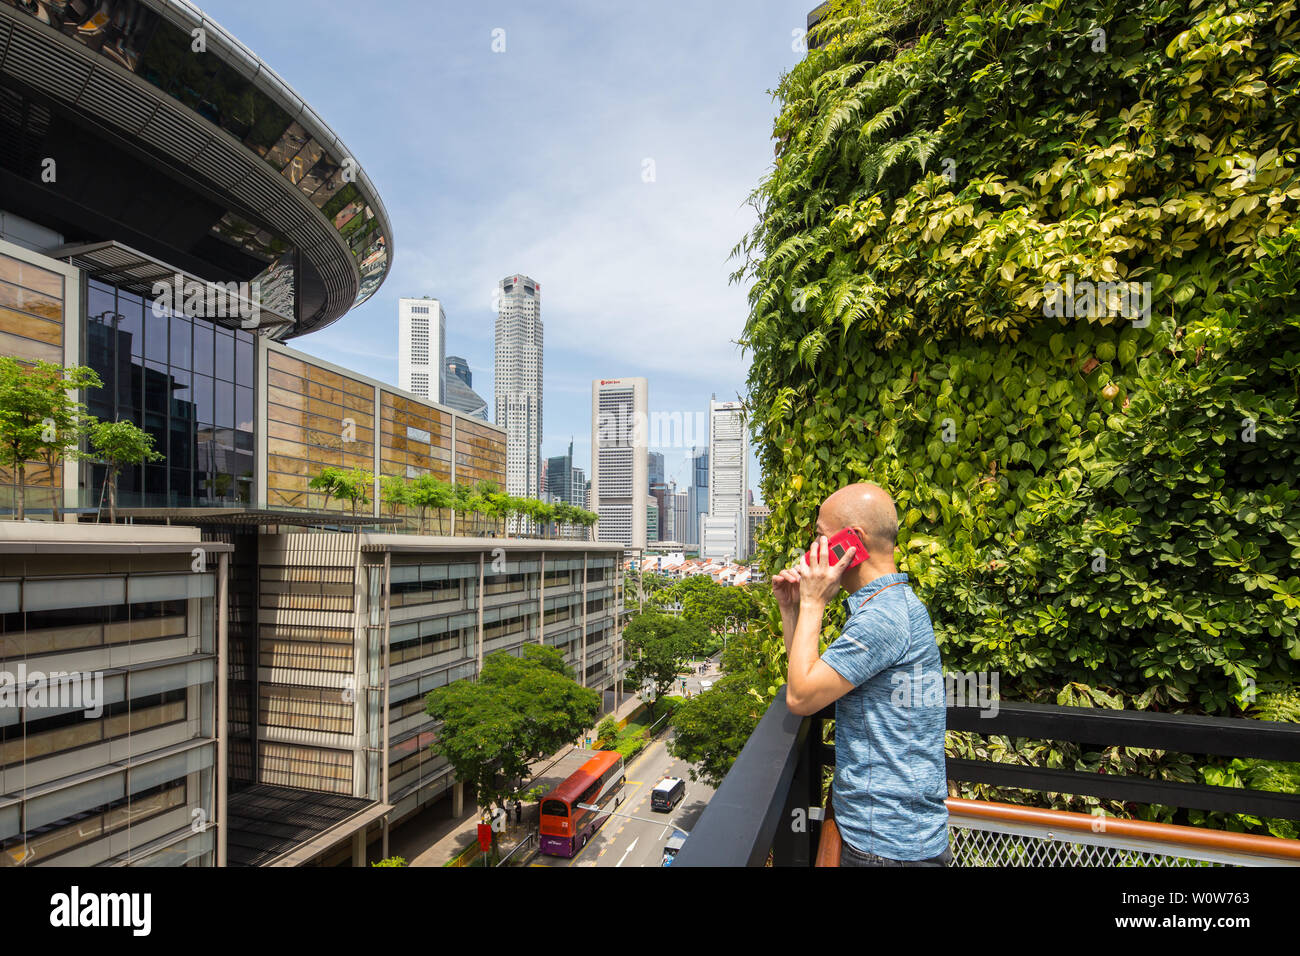 Un homme au téléphone à Urban Farming sur le toit du centre commercial Funan, le toit offre une vue sur la rue de la ville, Singapour Banque D'Images